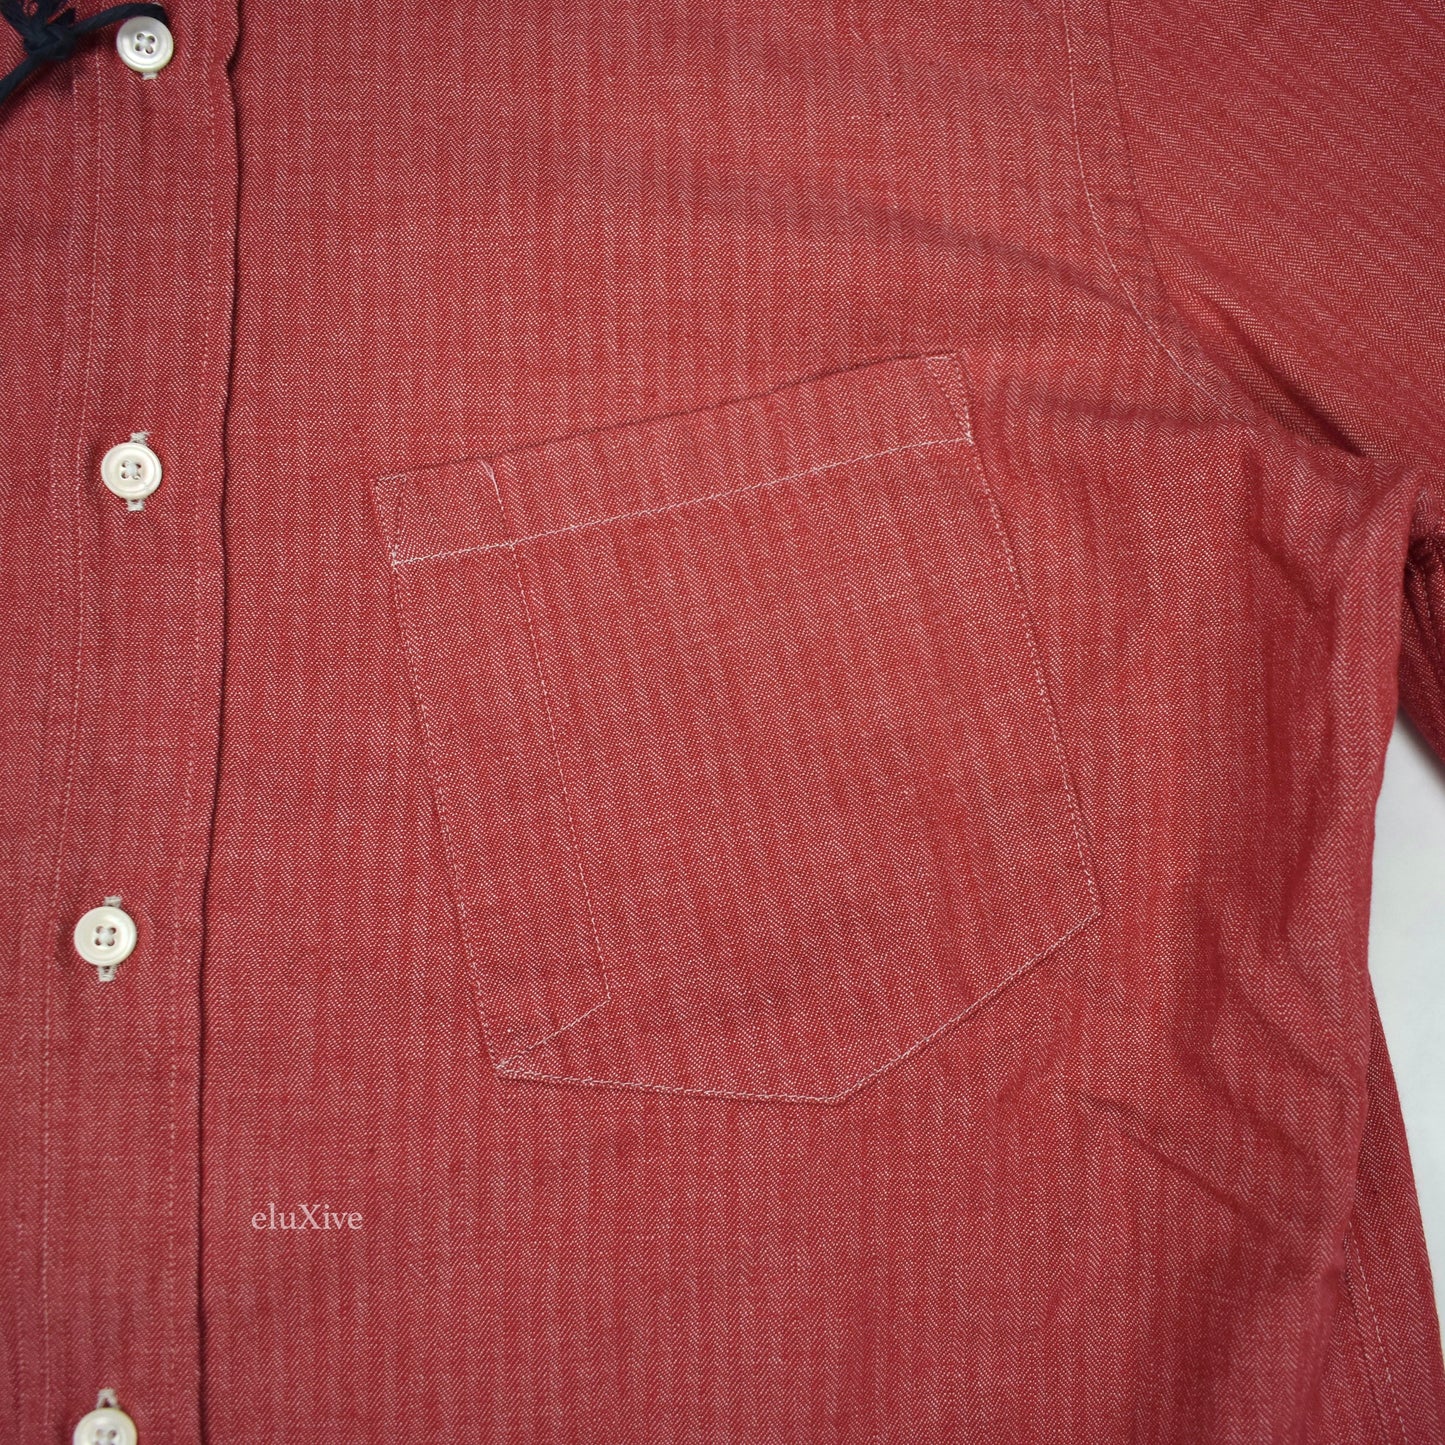 Boglioli - Red Herringbone Woven Cotton Button Down Shirt